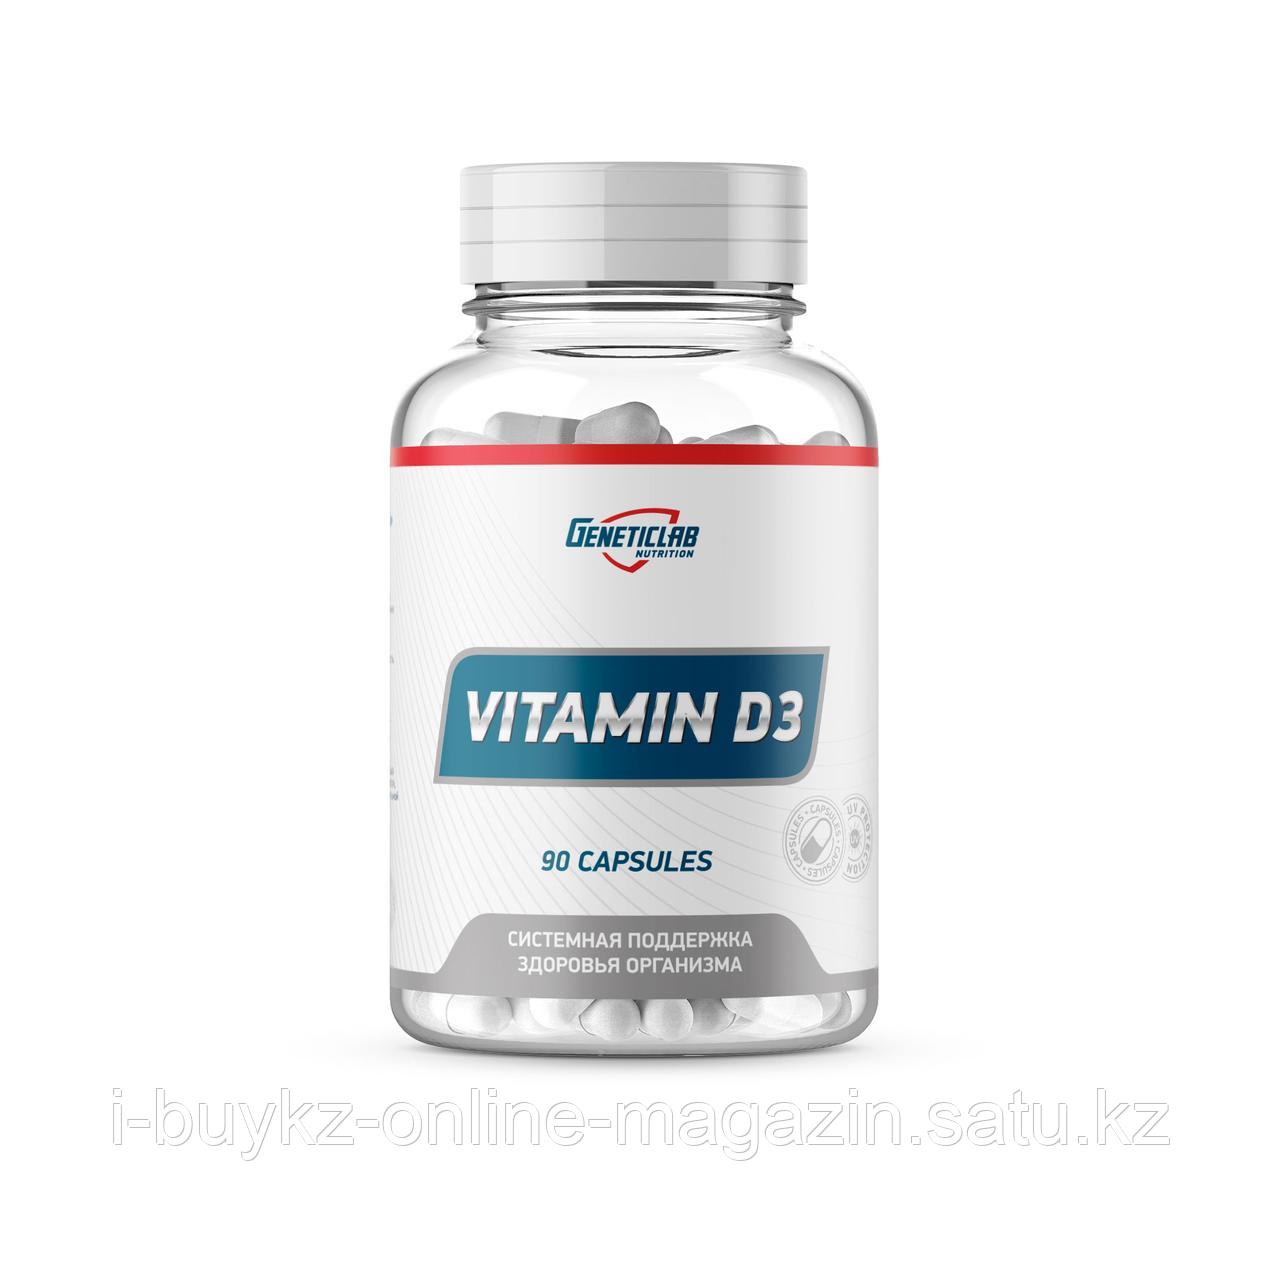 Витамин D3 Geneticlab